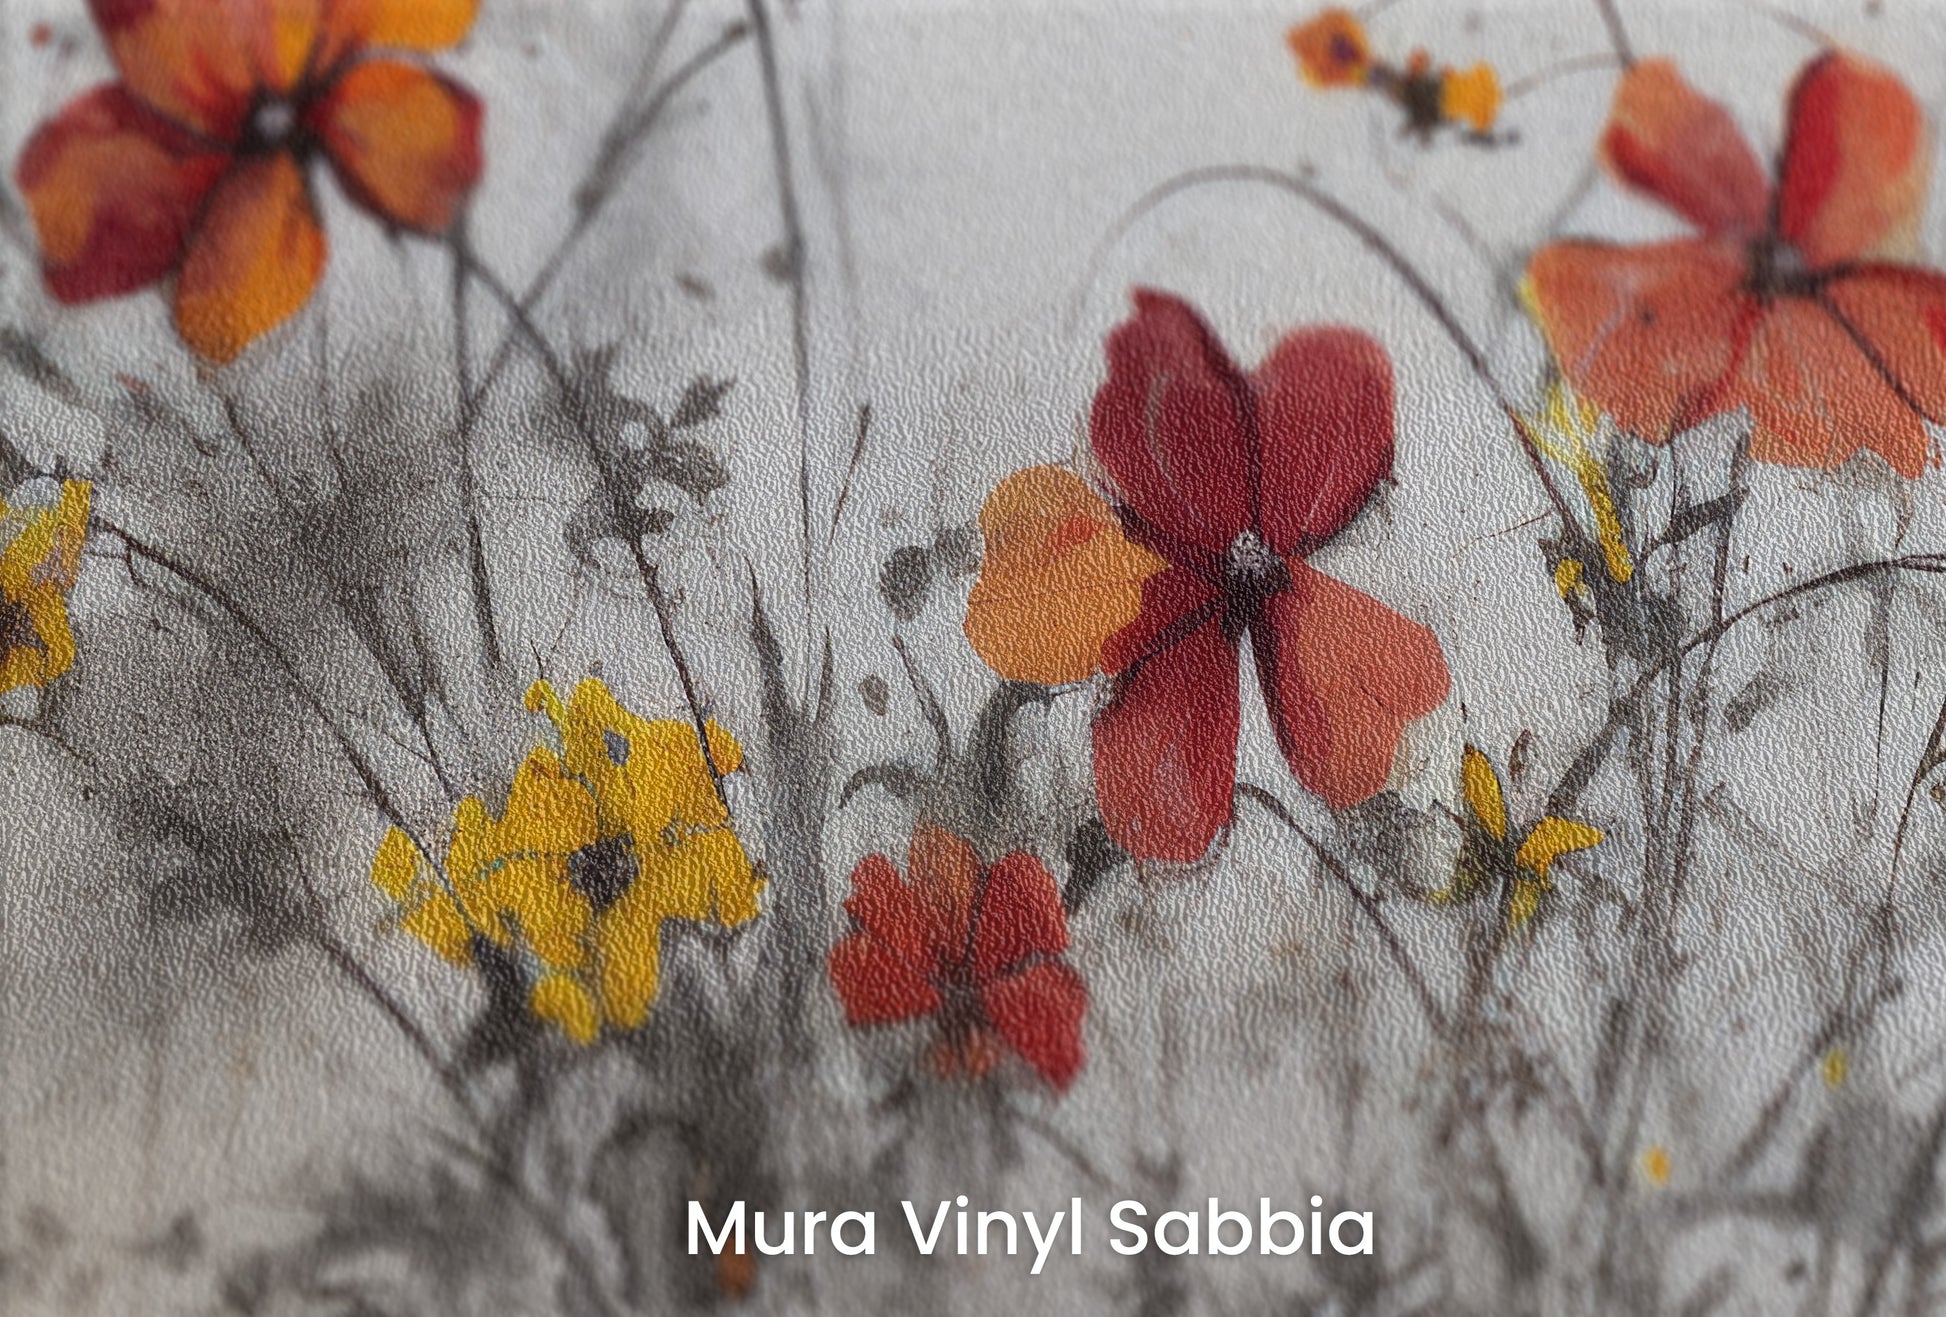 Zbliżenie na artystyczną fototapetę o nazwie VIVID AUTUMN WHISPERS na podłożu Mura Vinyl Sabbia struktura grubego ziarna piasku.